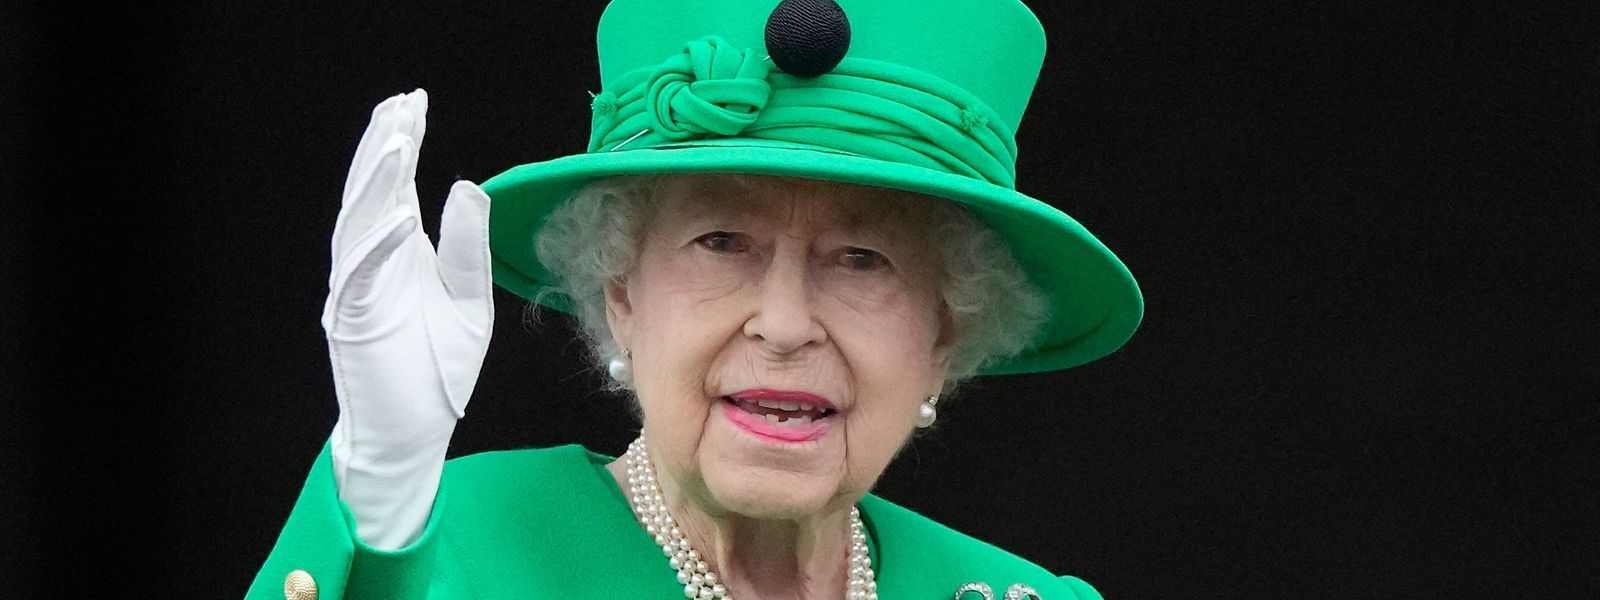 Isabell II apareceu inesperadamente na varanda do Palácio de Buckingham este domingo.